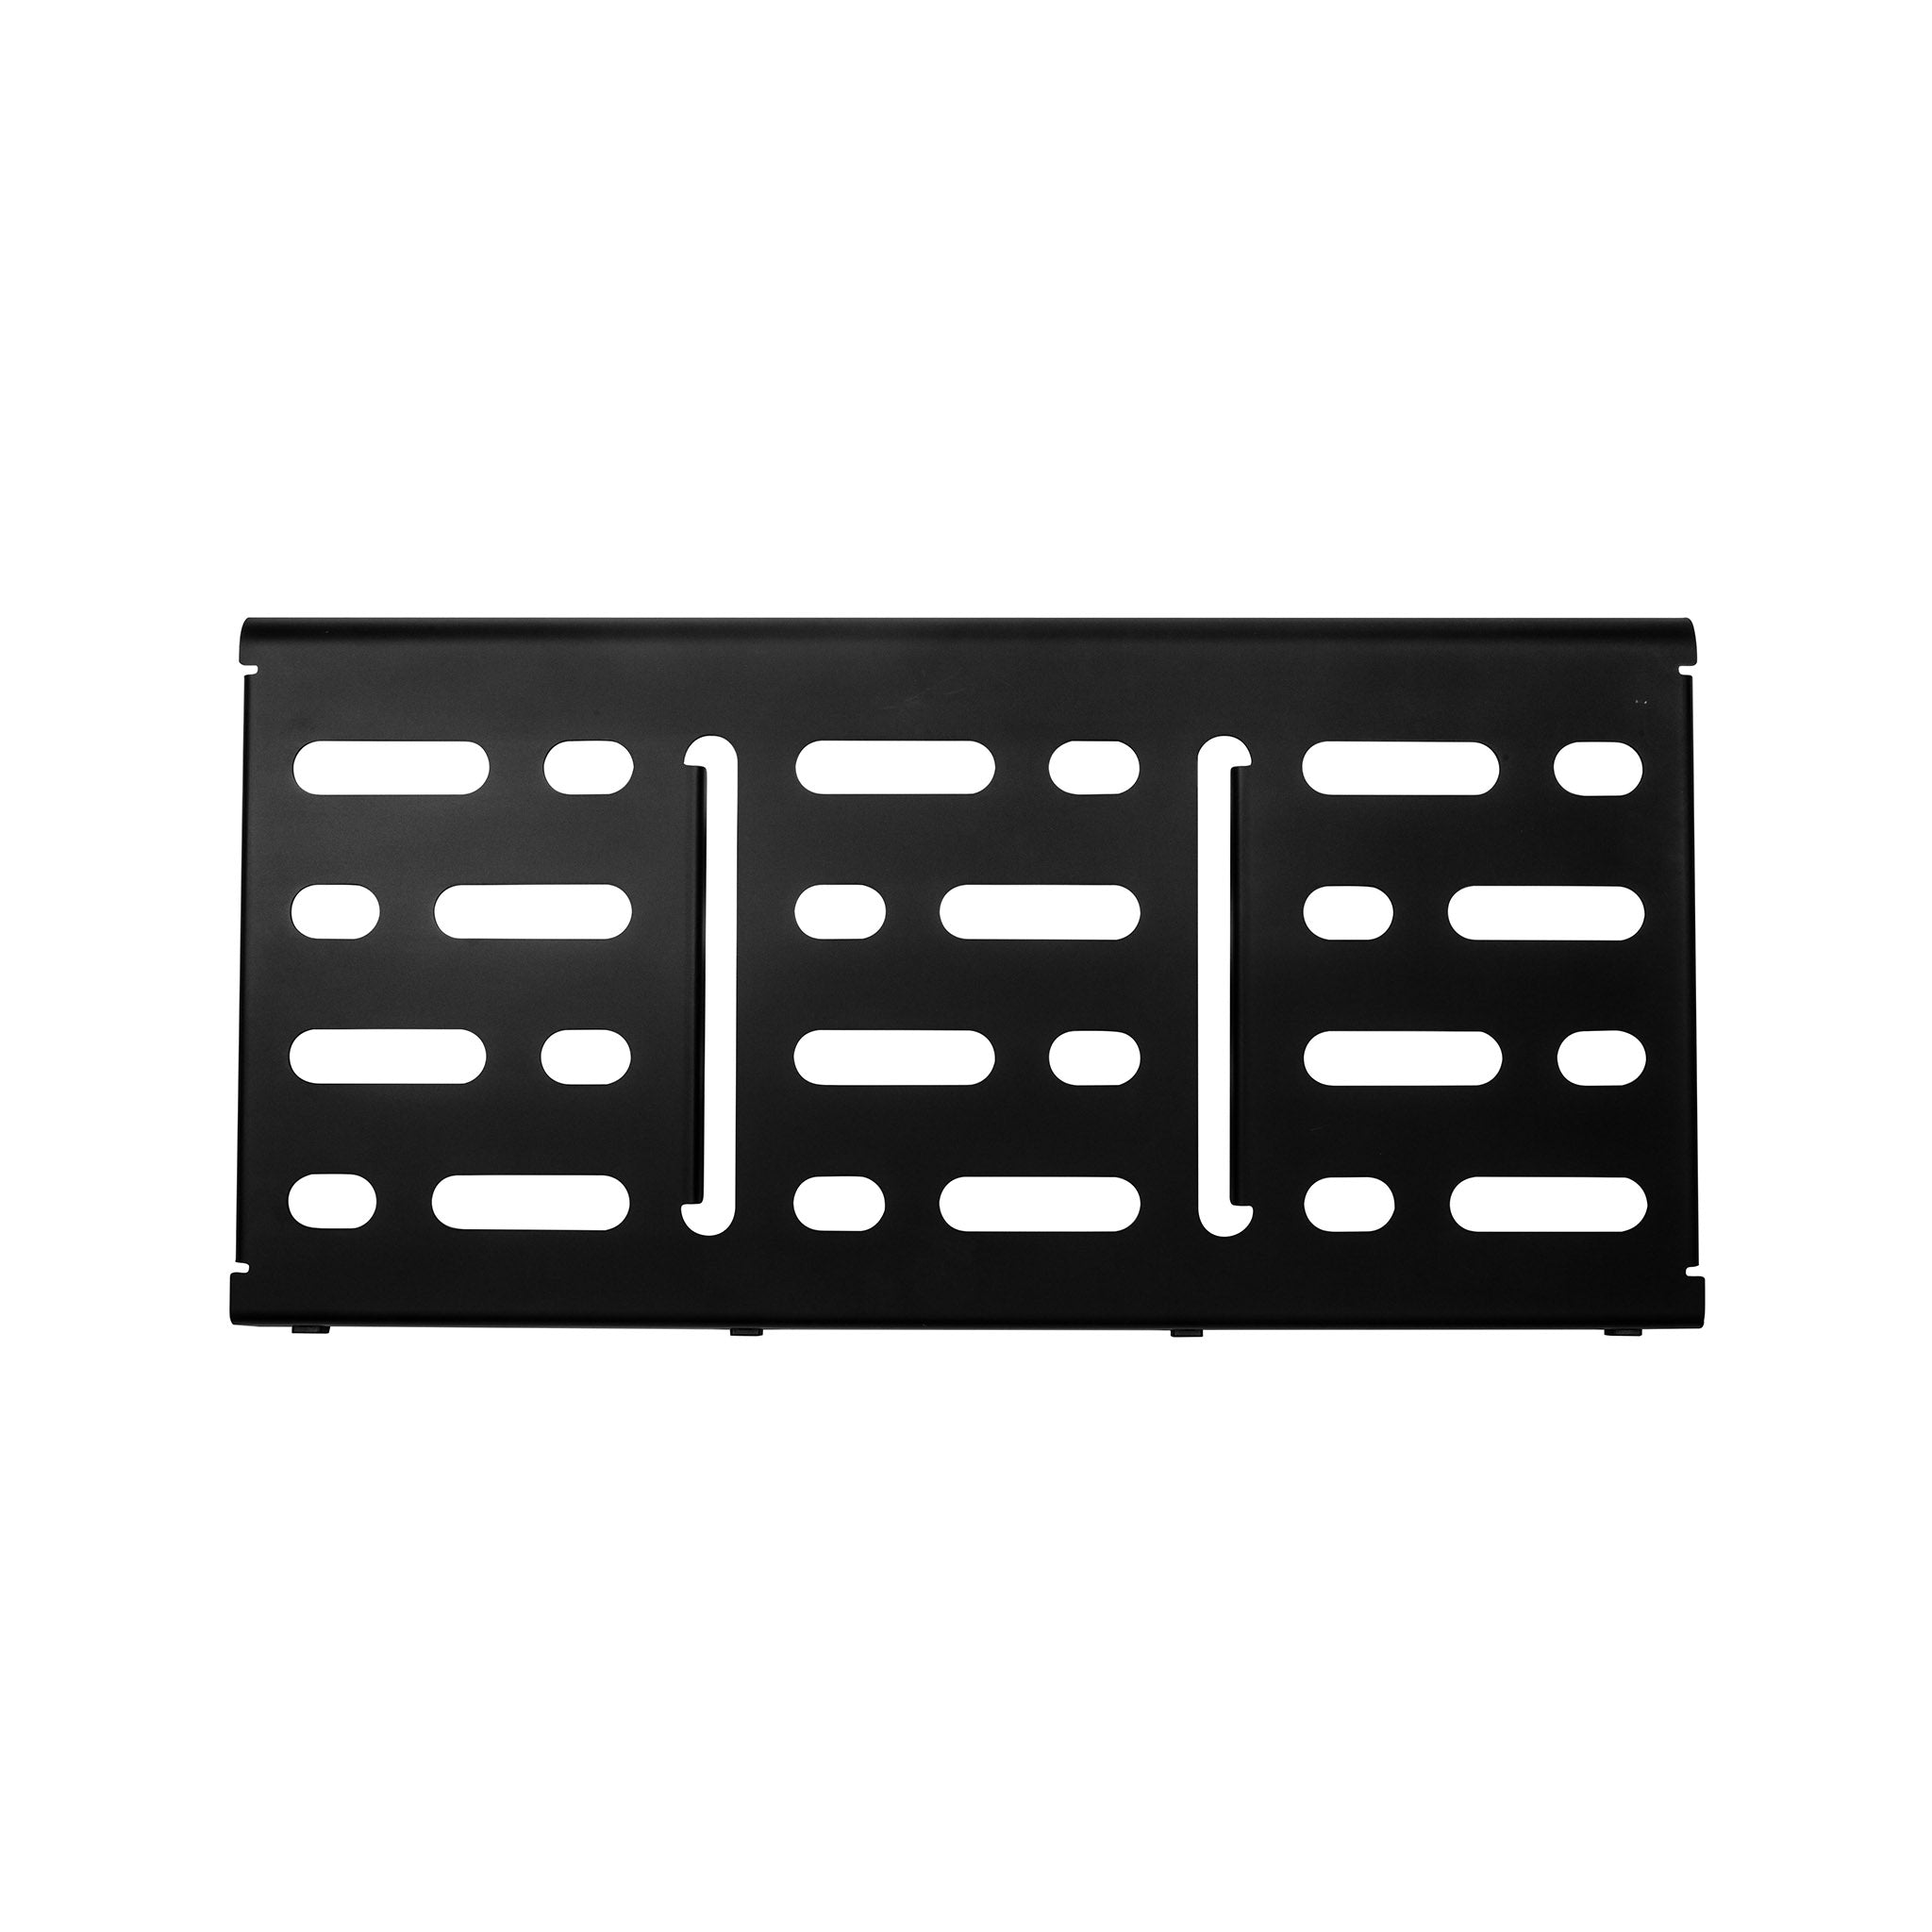 MONO Pedalboard Large, Black and Pro Accessory Case 2.0, Black - ZOSO MUSIC